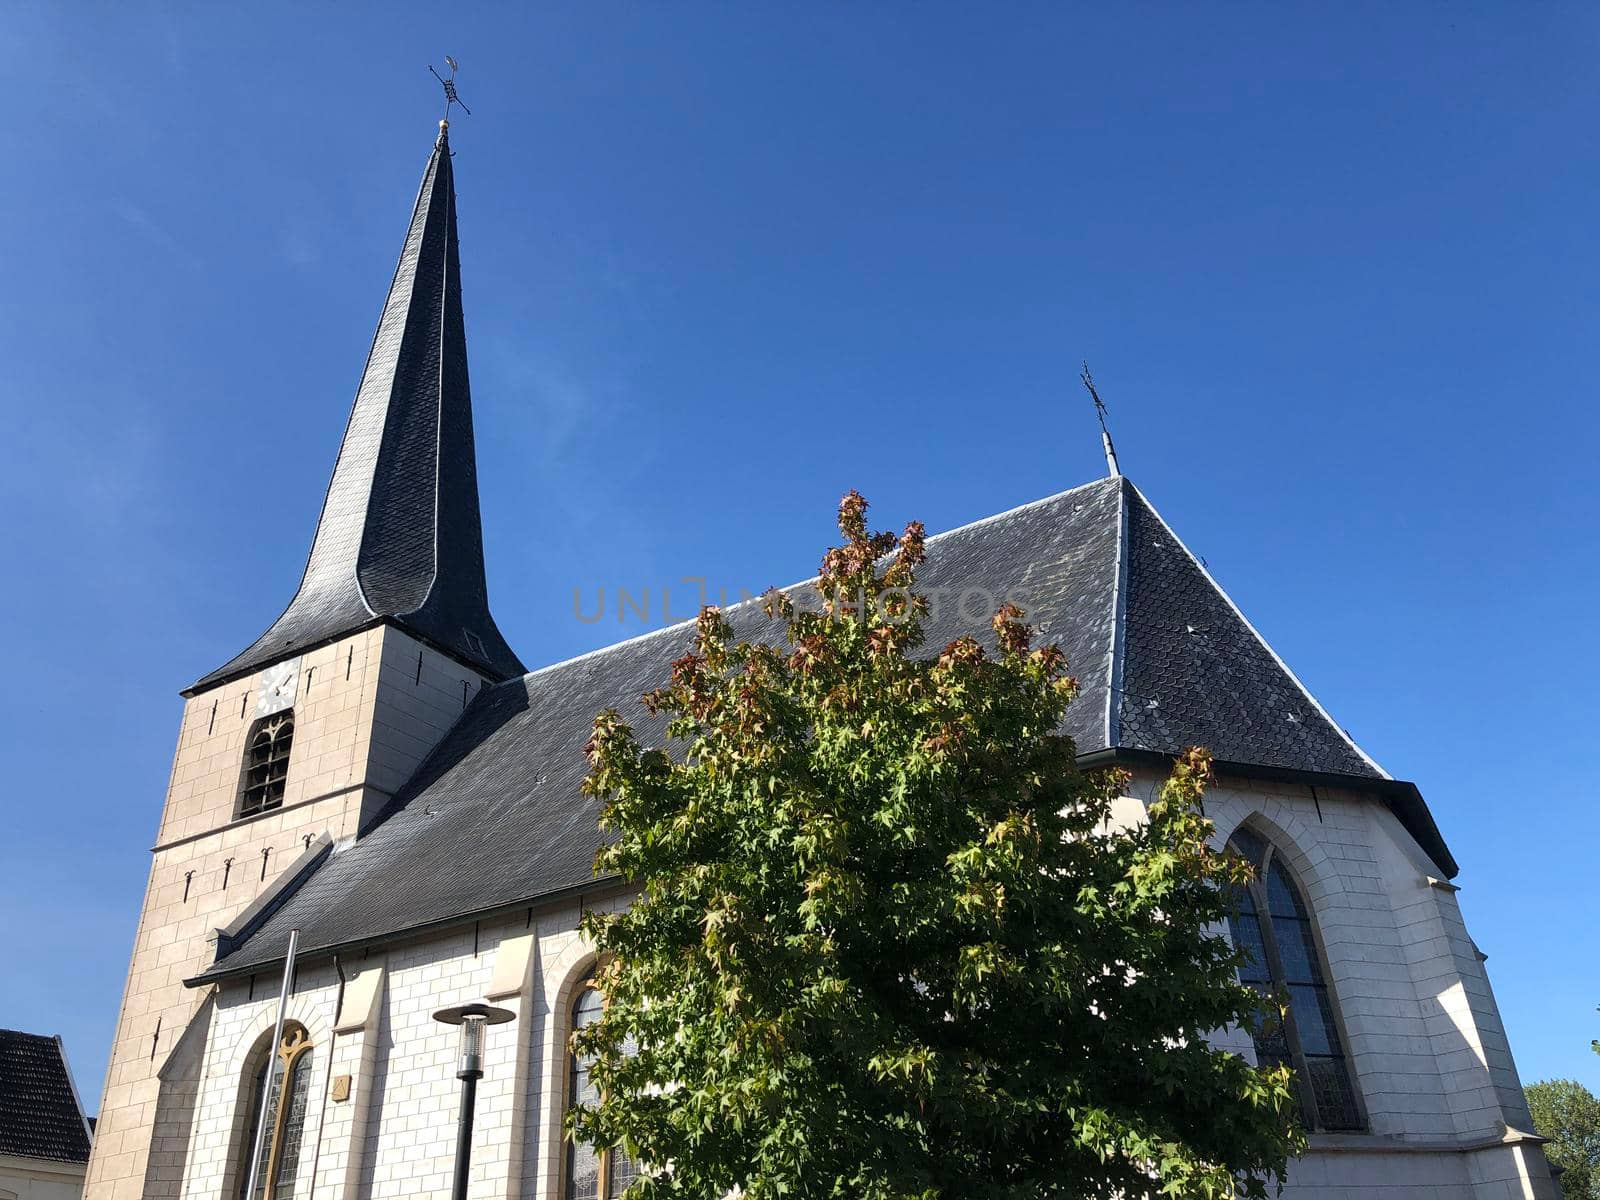 Johannes church in Lichtenvoorde by traveltelly